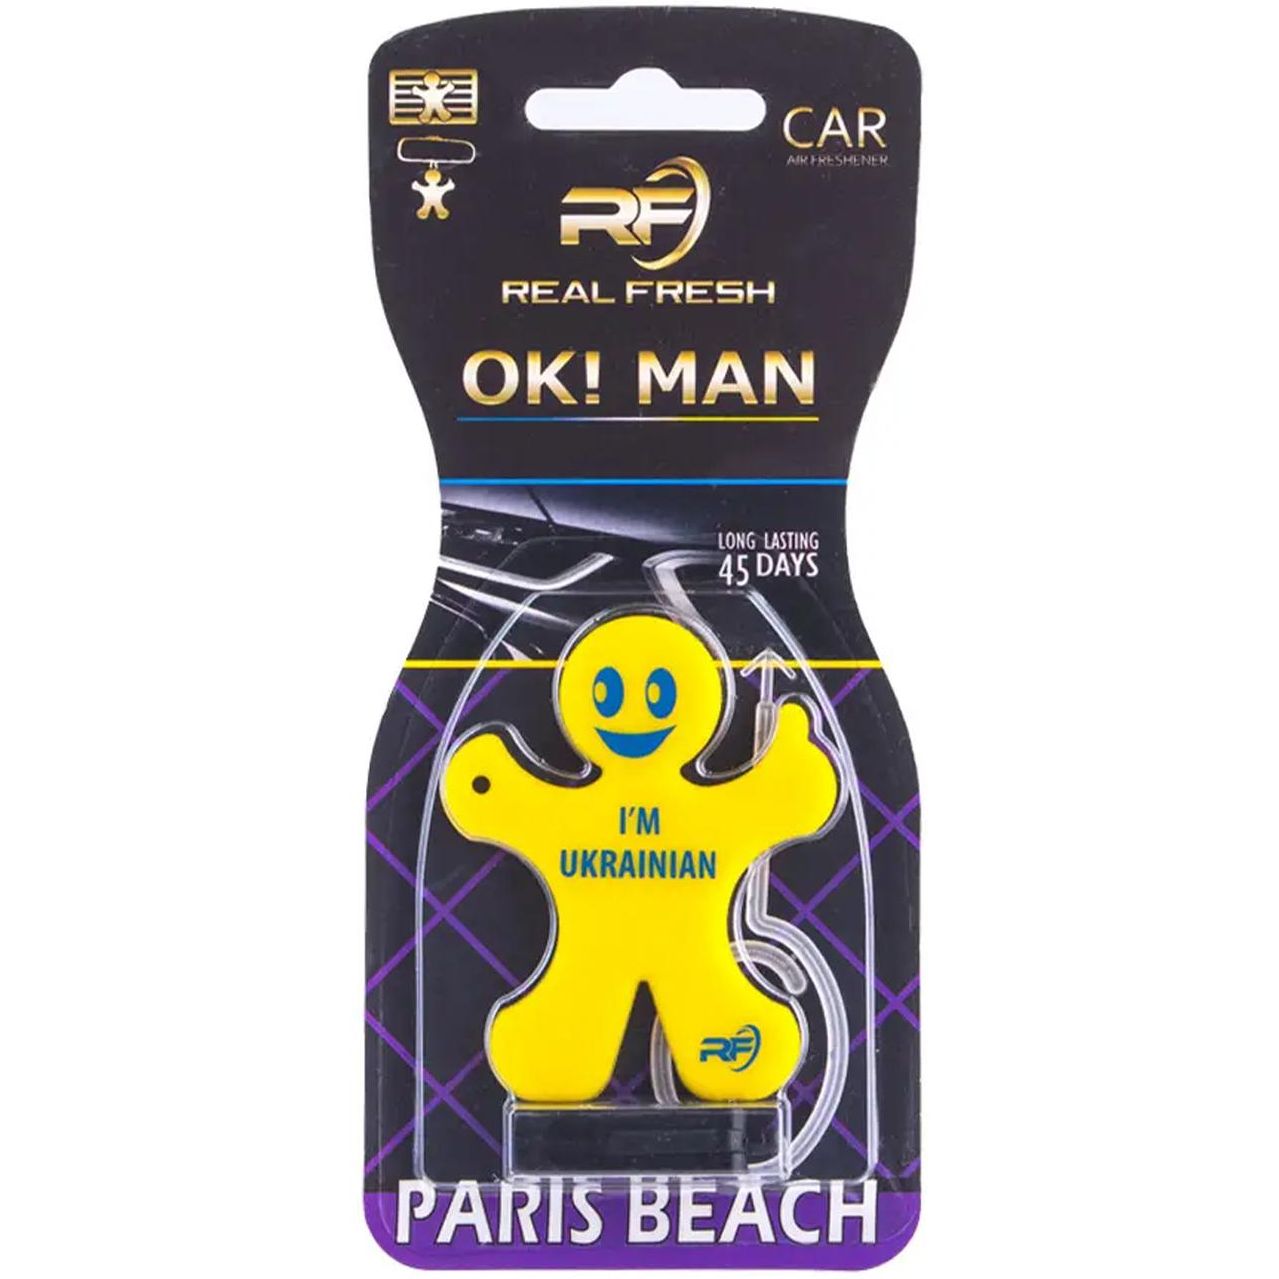 Ароматизатор Real Fresh OK! MAN Paris Beach Ukraine желтый - фото 1